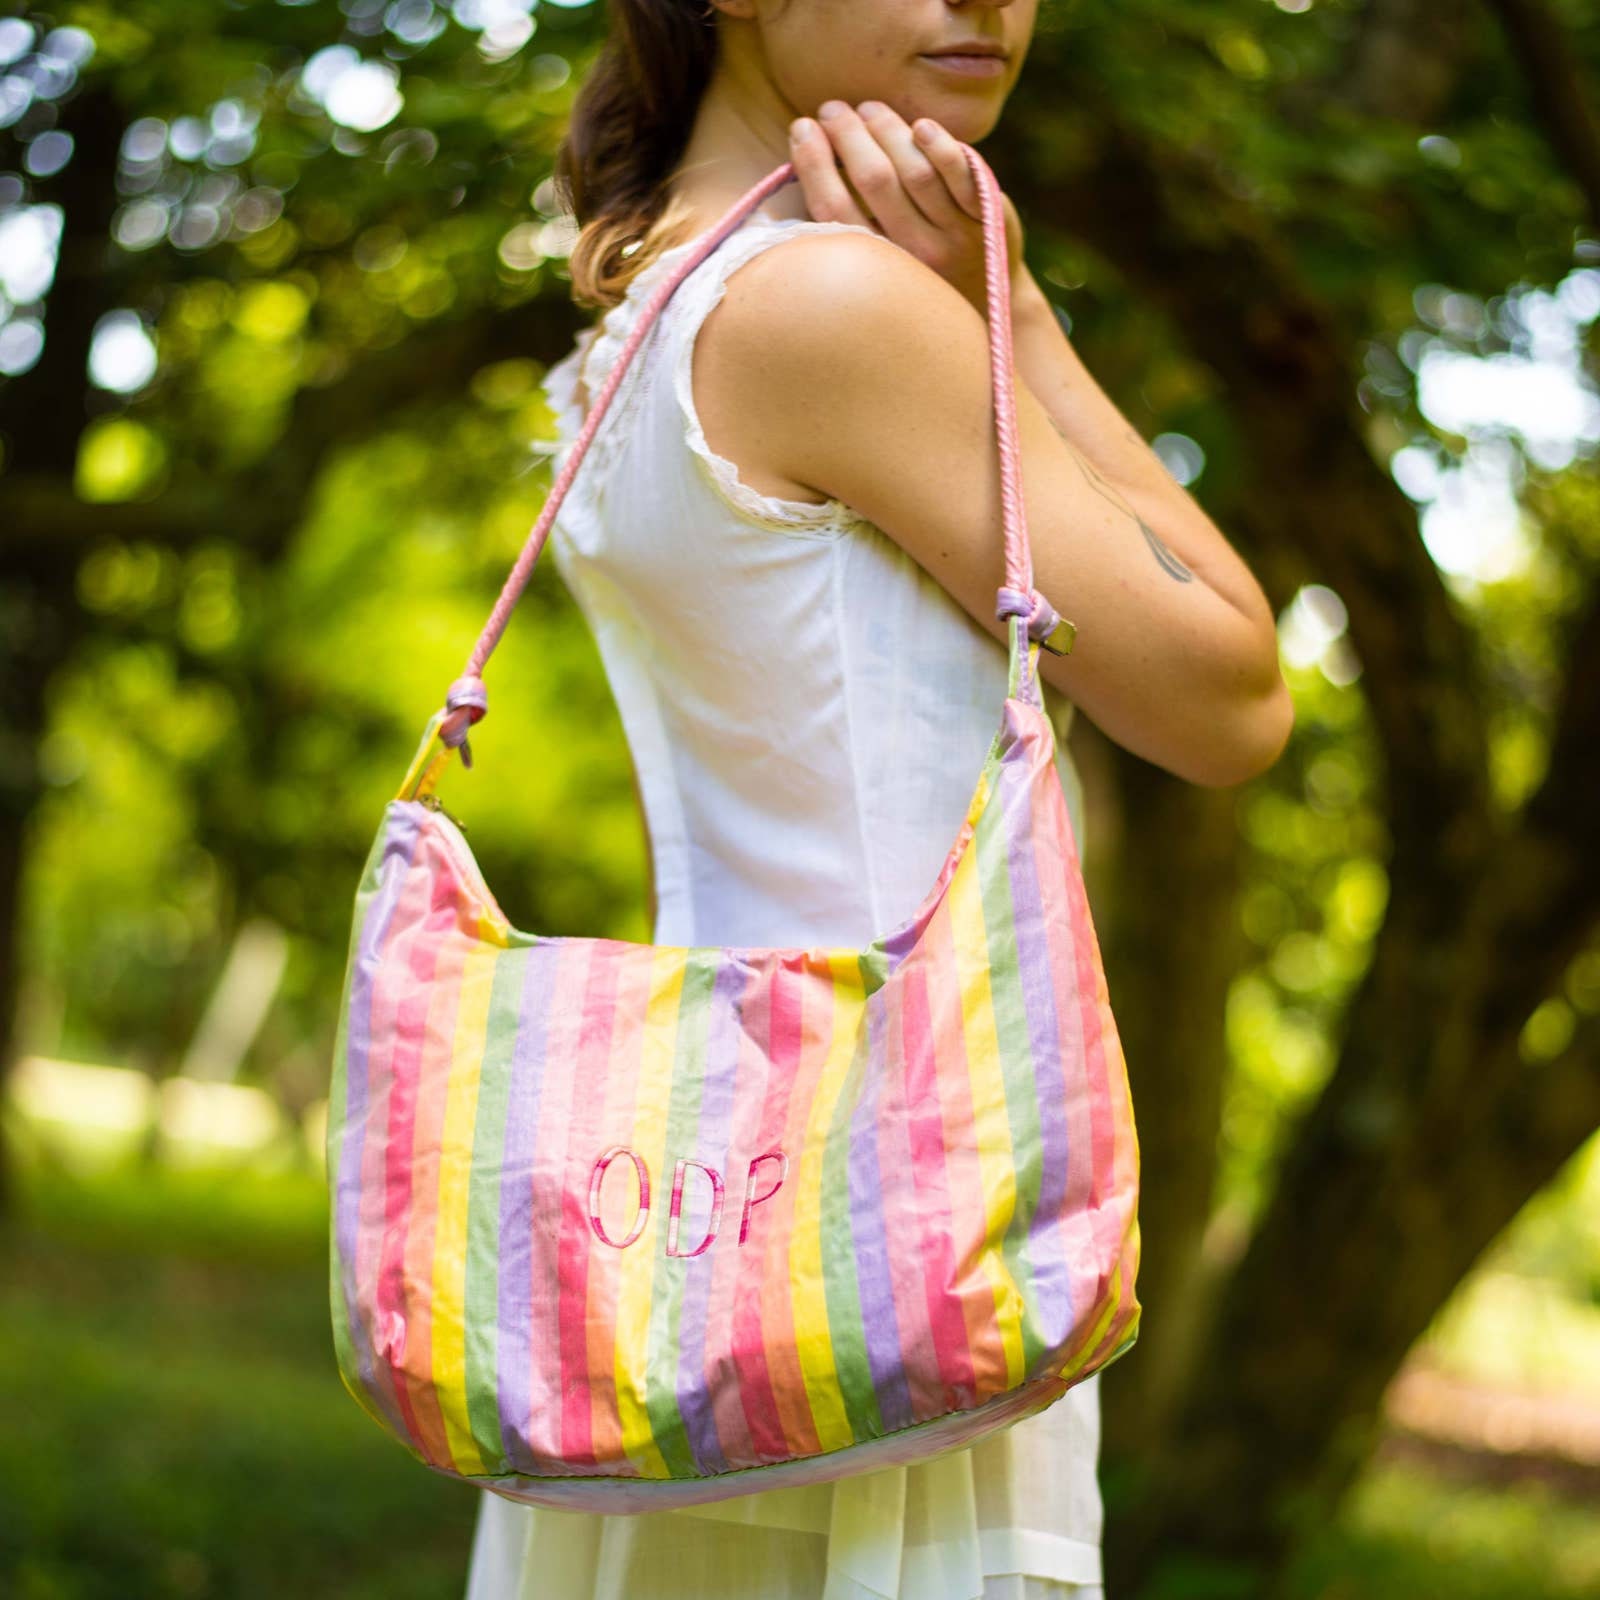 Buy Retro Handbag Retro Stripe Handbag Retro Rainbow Handbag